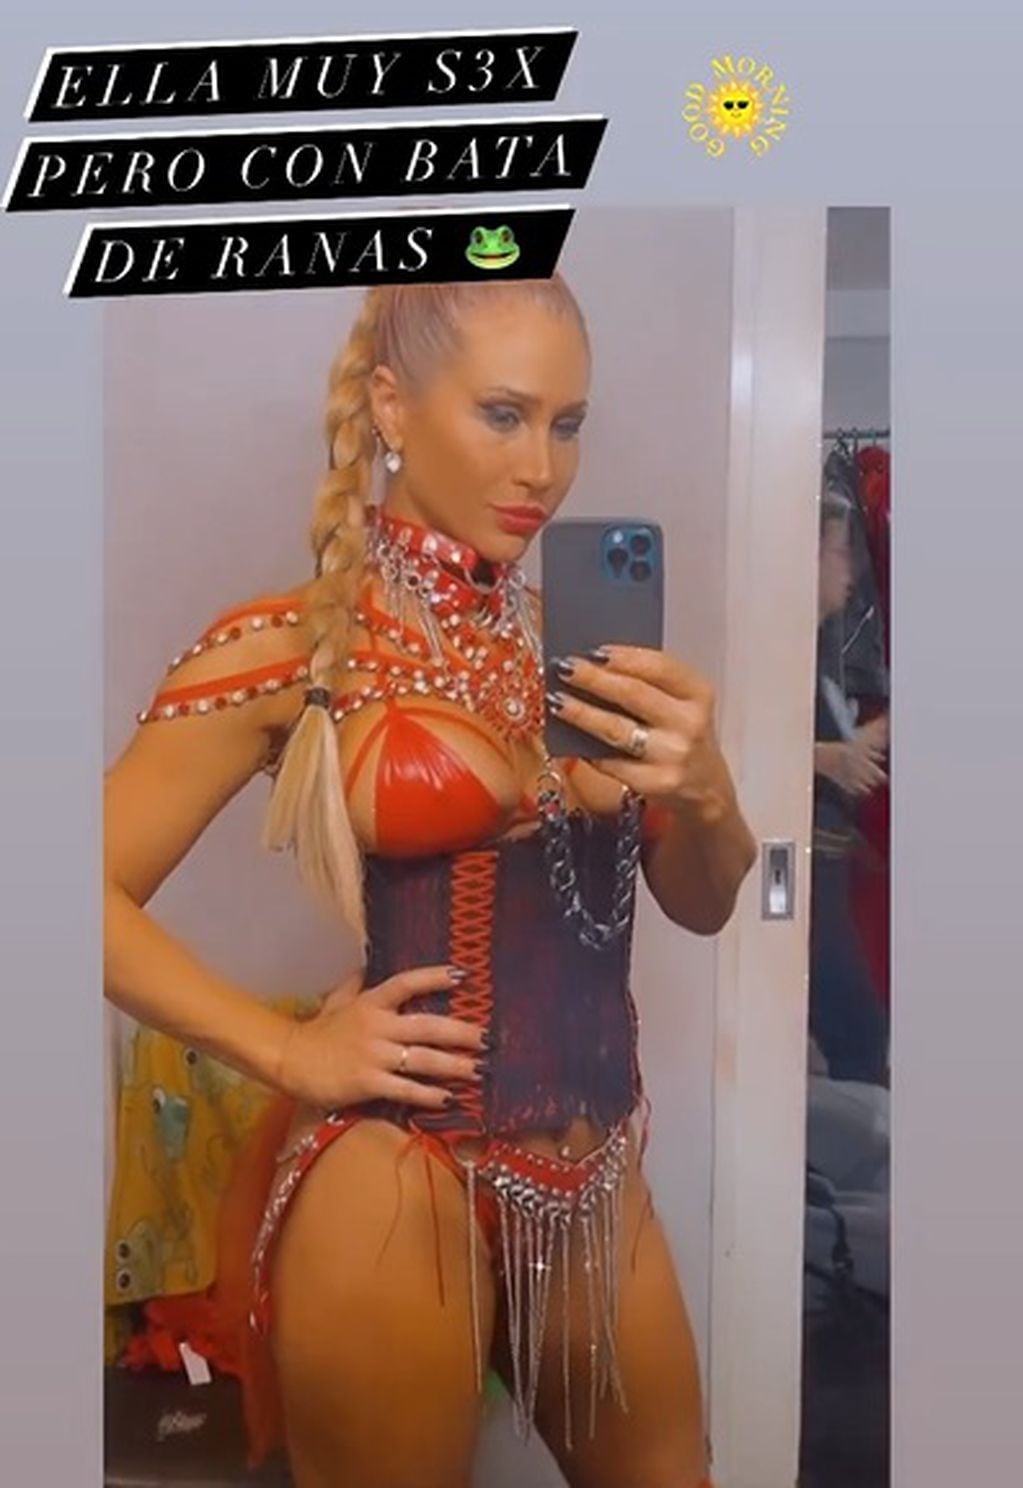 La bailarina impactó con su outfit de Sex en las redes sociales / Foto: Instagram